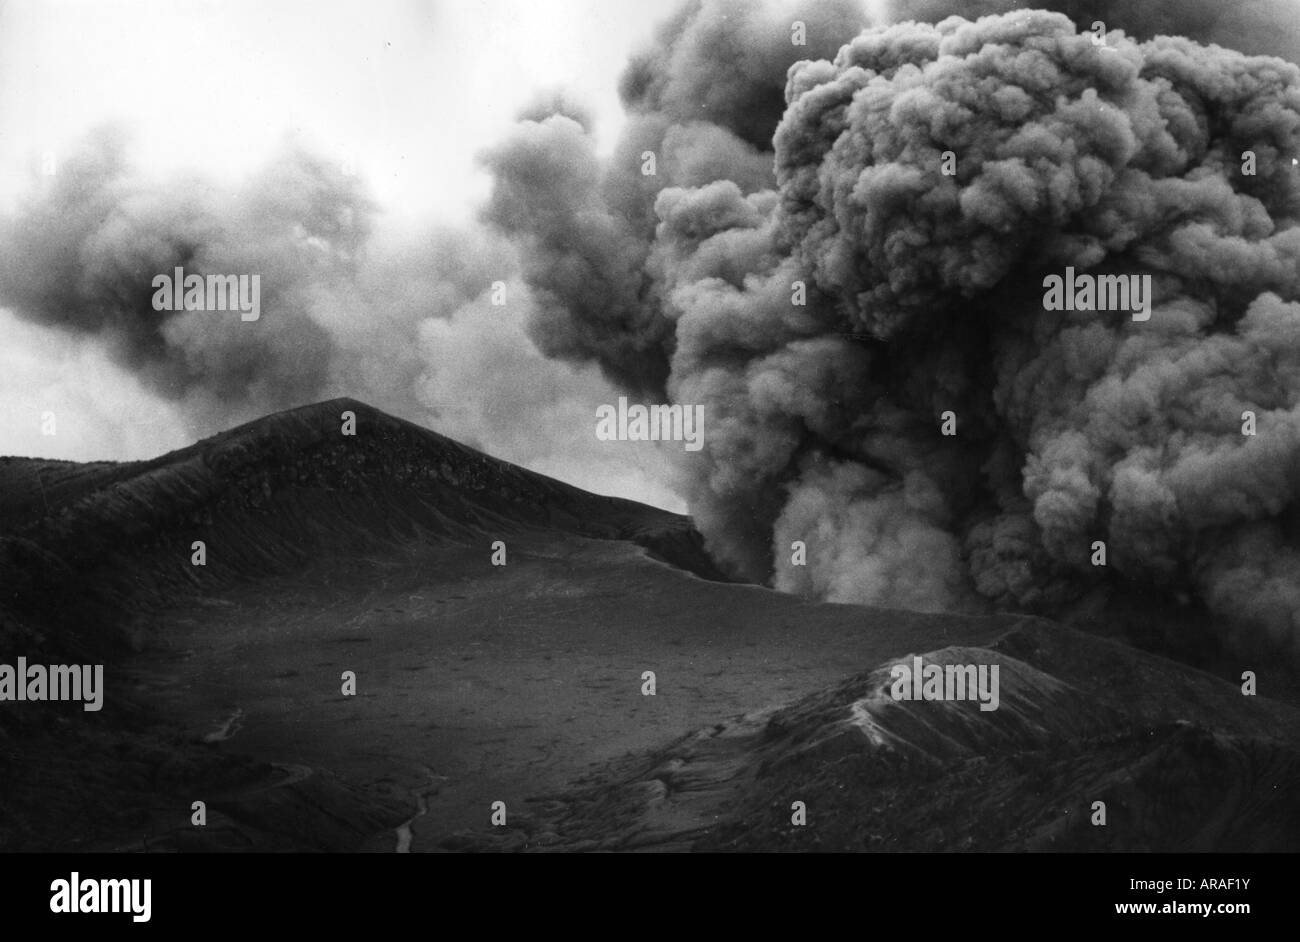 Geographie/Reise, Costa Rica, Naturkatastrophen/Katastrophe, Vulkanausbruch des Irazu-Vulkans, schwarze Wolken über dem Krater, 1963, Stockfoto